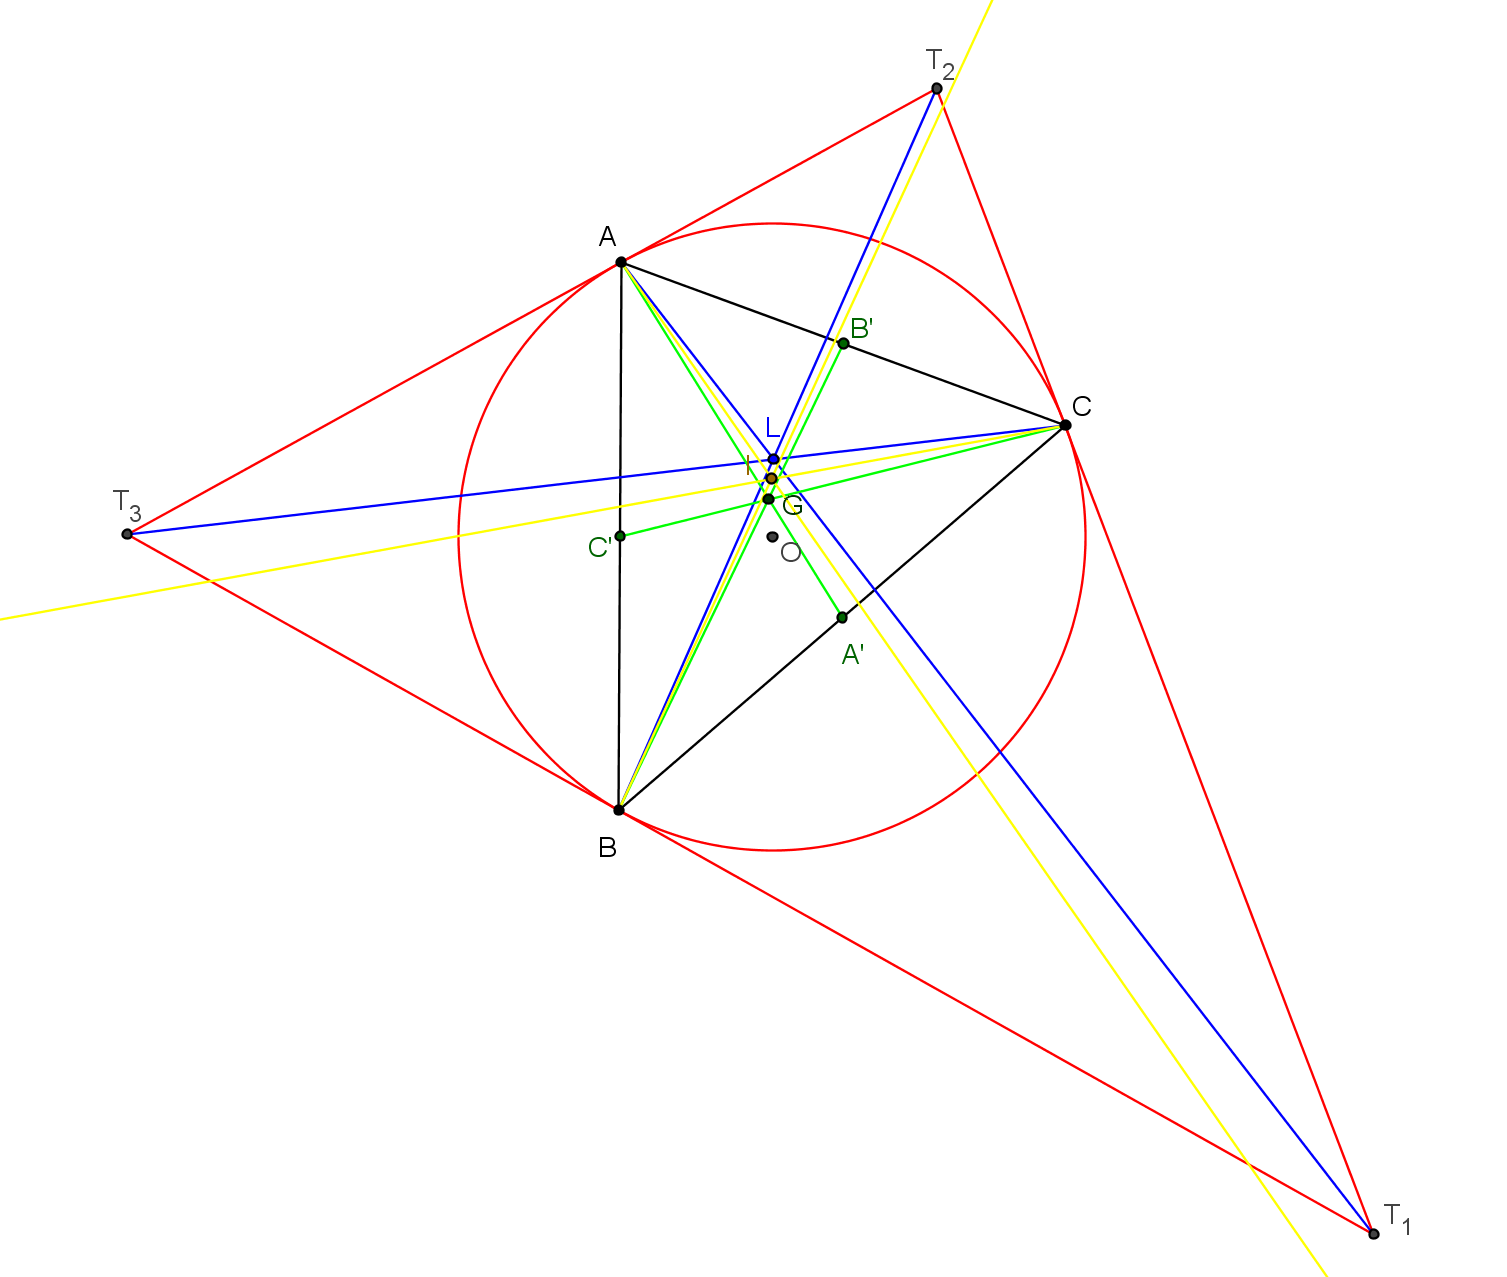 geometrie du triangle - symedianes concourantes au point de lemoine - copyright Patrice Debart 2016